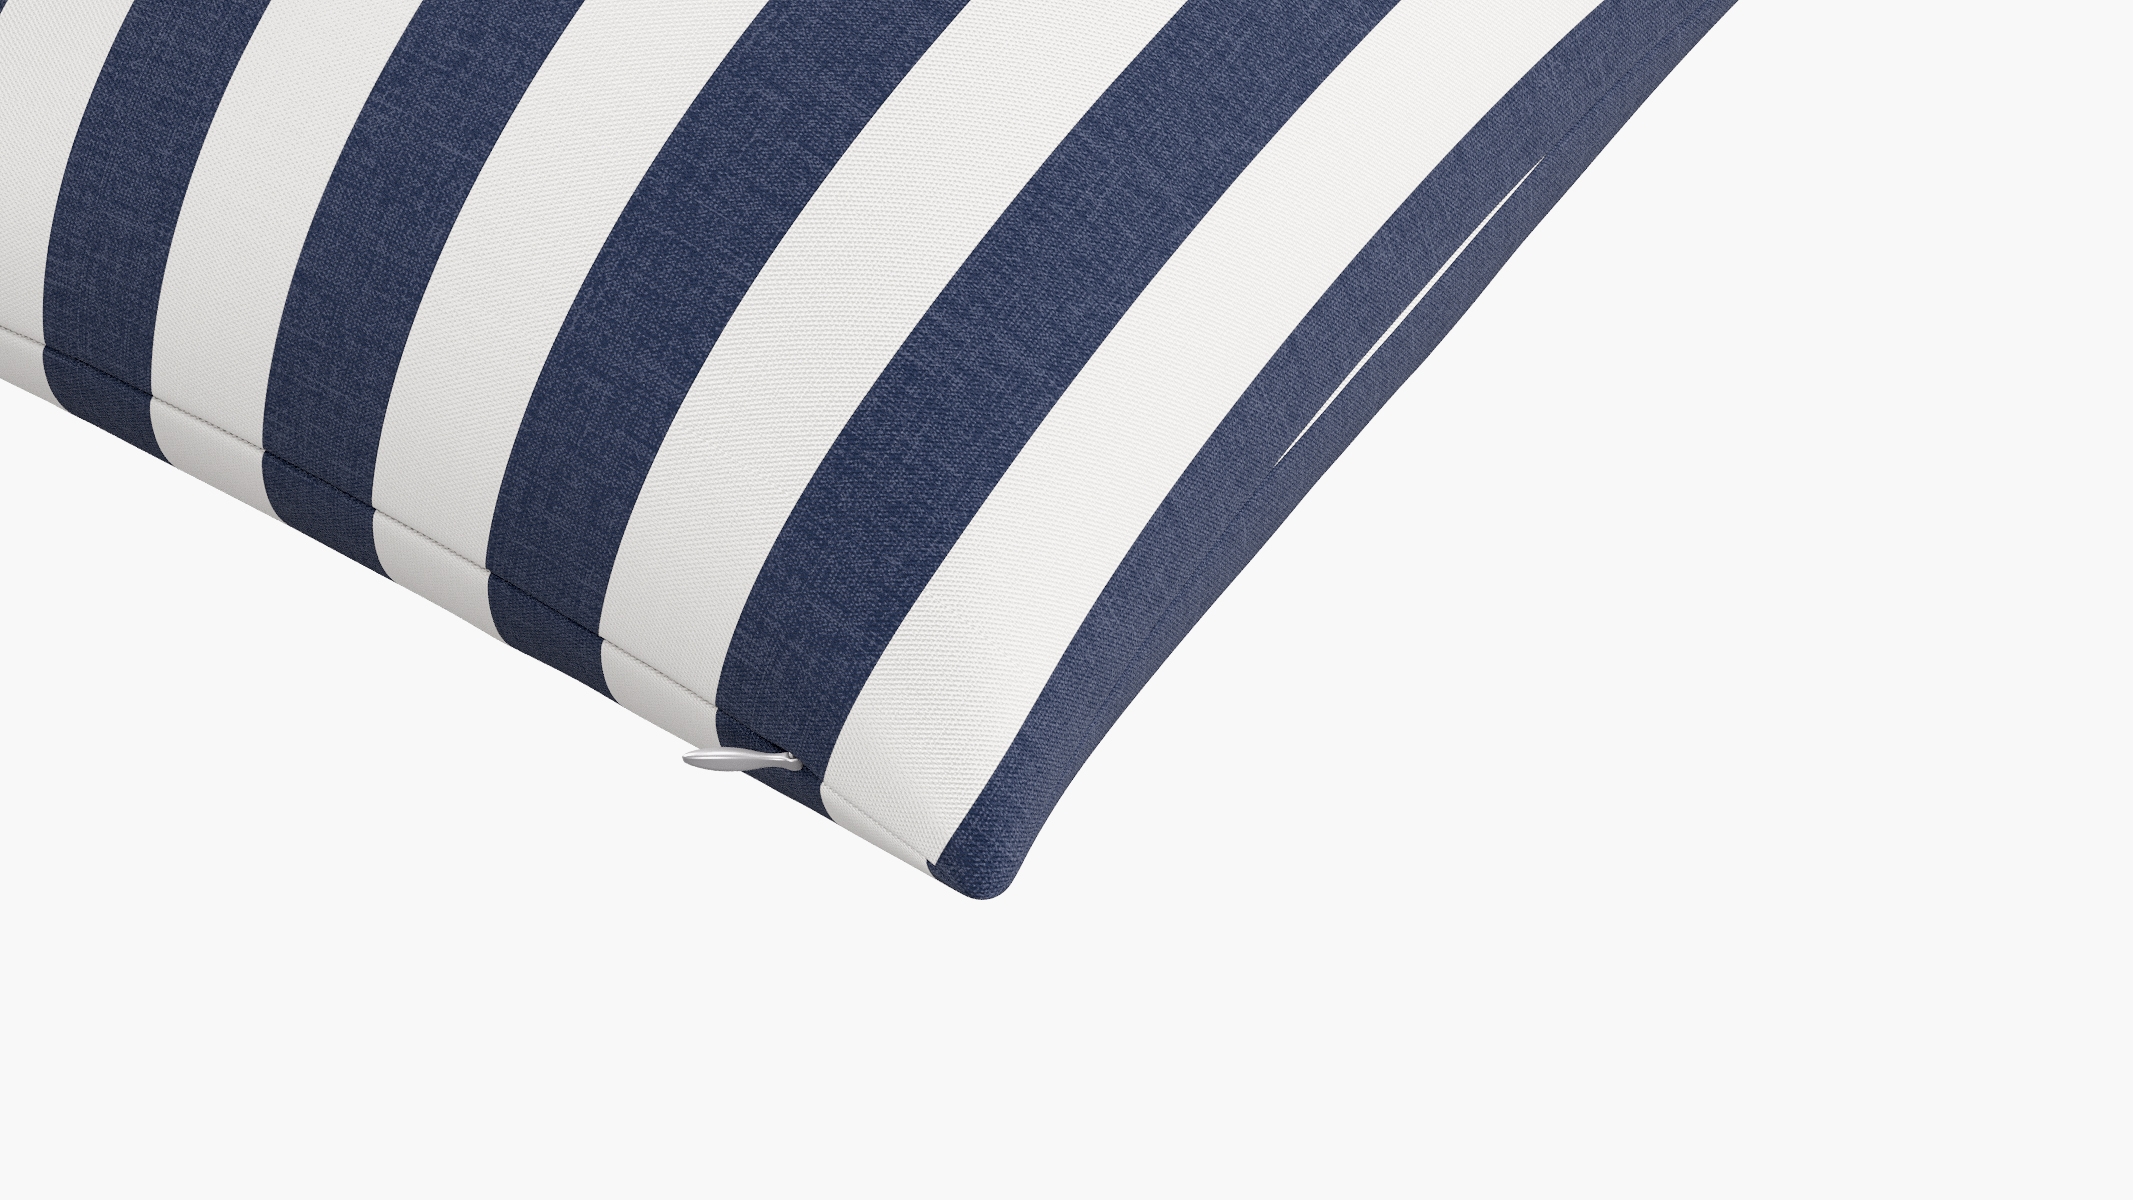 Throw Pillow 18", Navy Cabana Stripe, 18" x 18" - Image 1